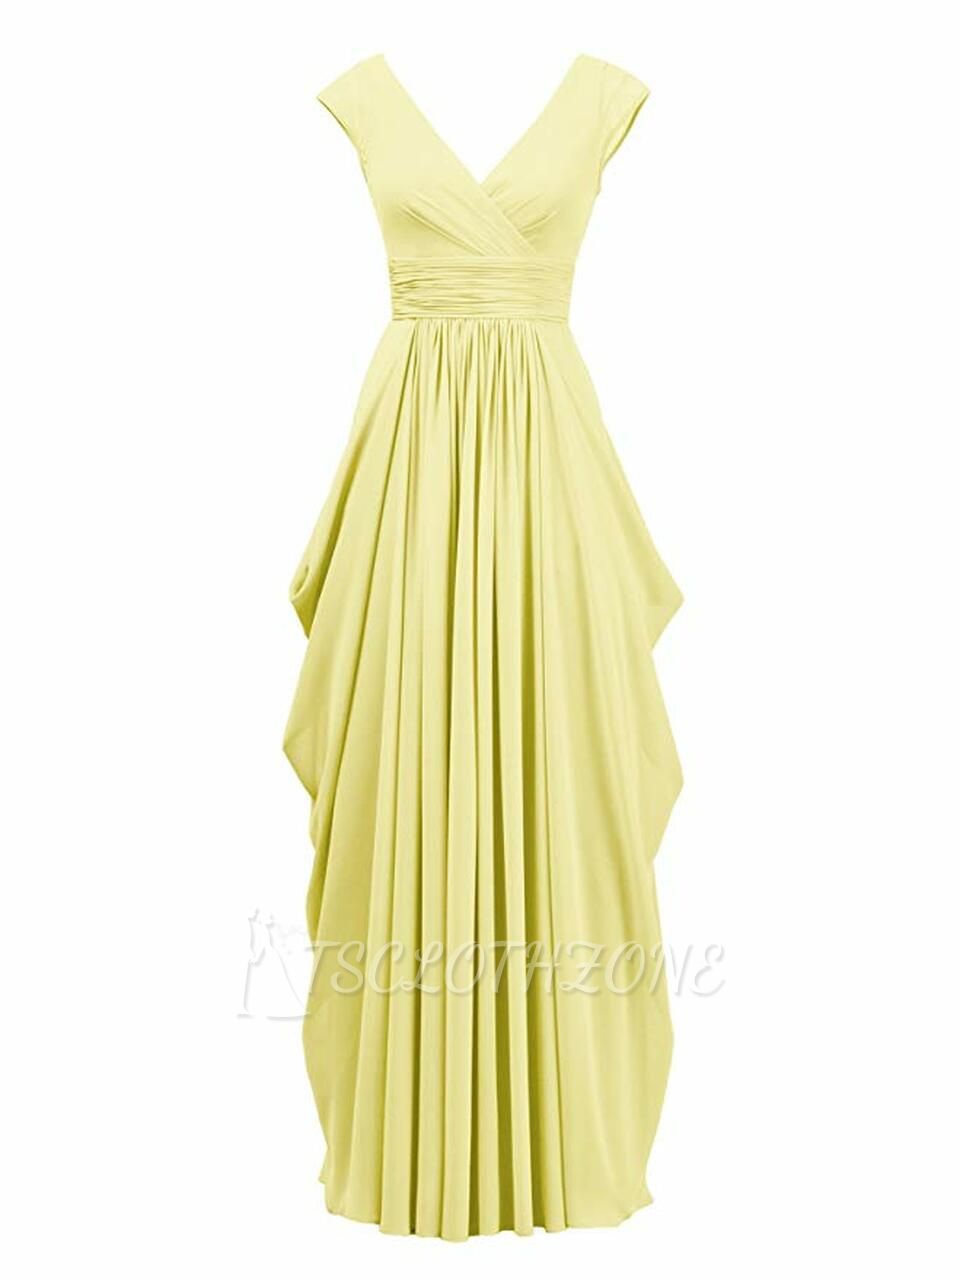 Geraffte gelbe Cape-Ärmel mit V-Ausschnitt, langes Abendkleid für Brautjungfern